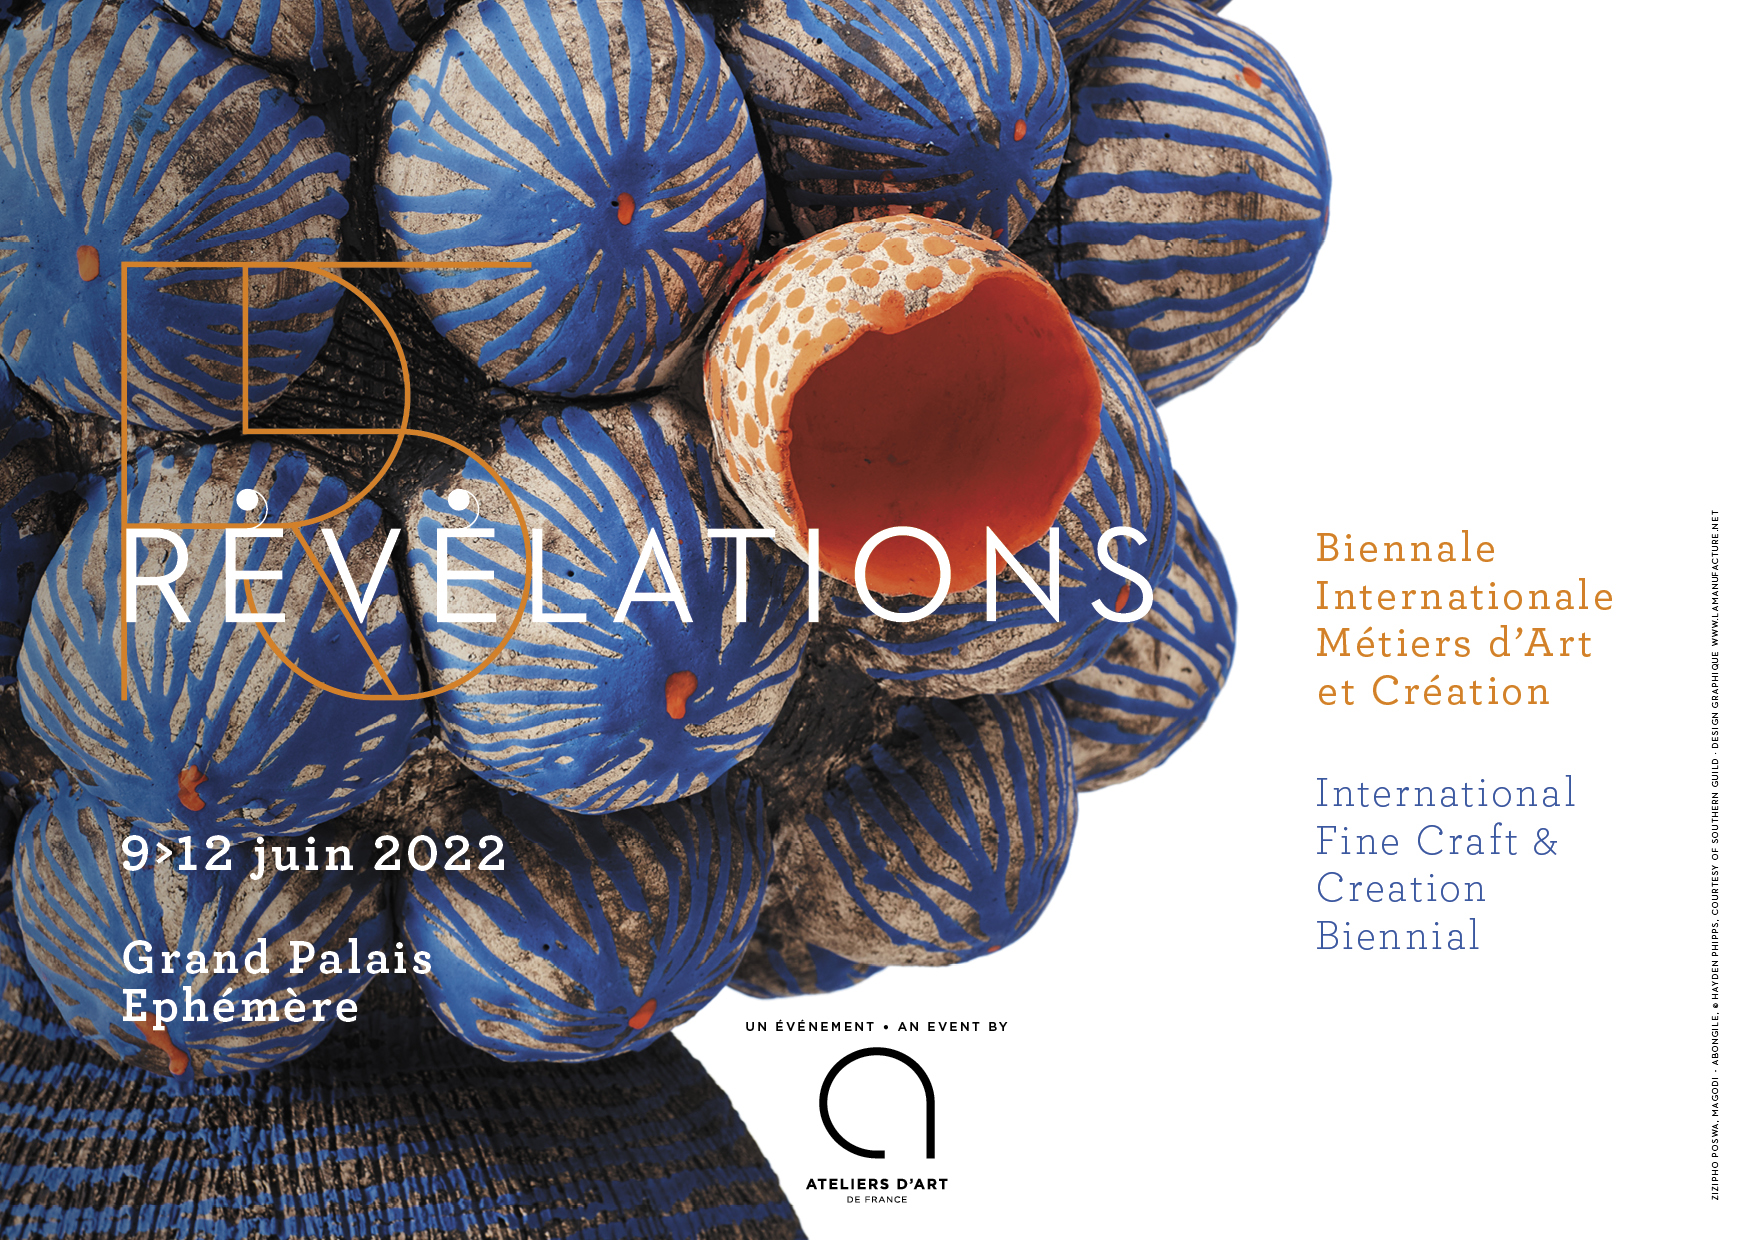 Save the Date – Révélations, Biennale Internationale des Métiers d’Art et de Création